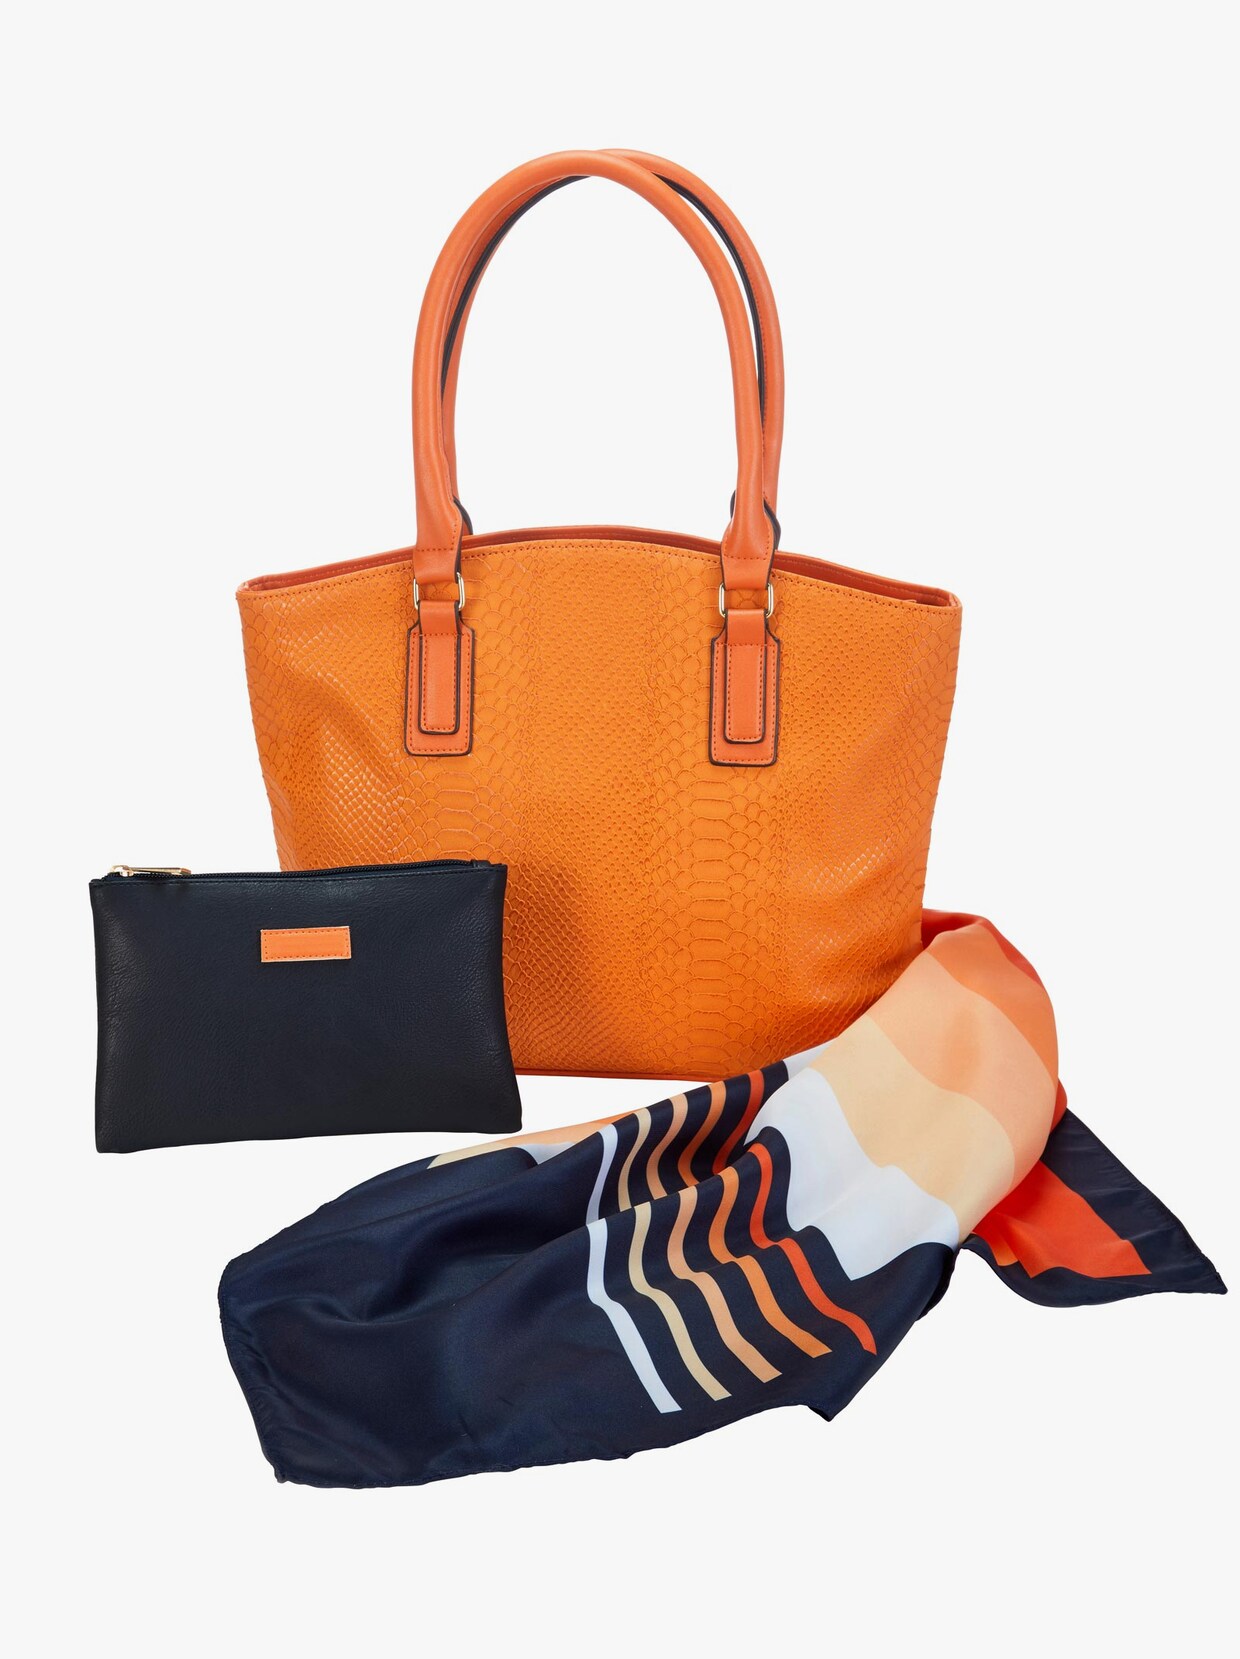 Handtasche mit Kosmetiktasche und Tuch - orange